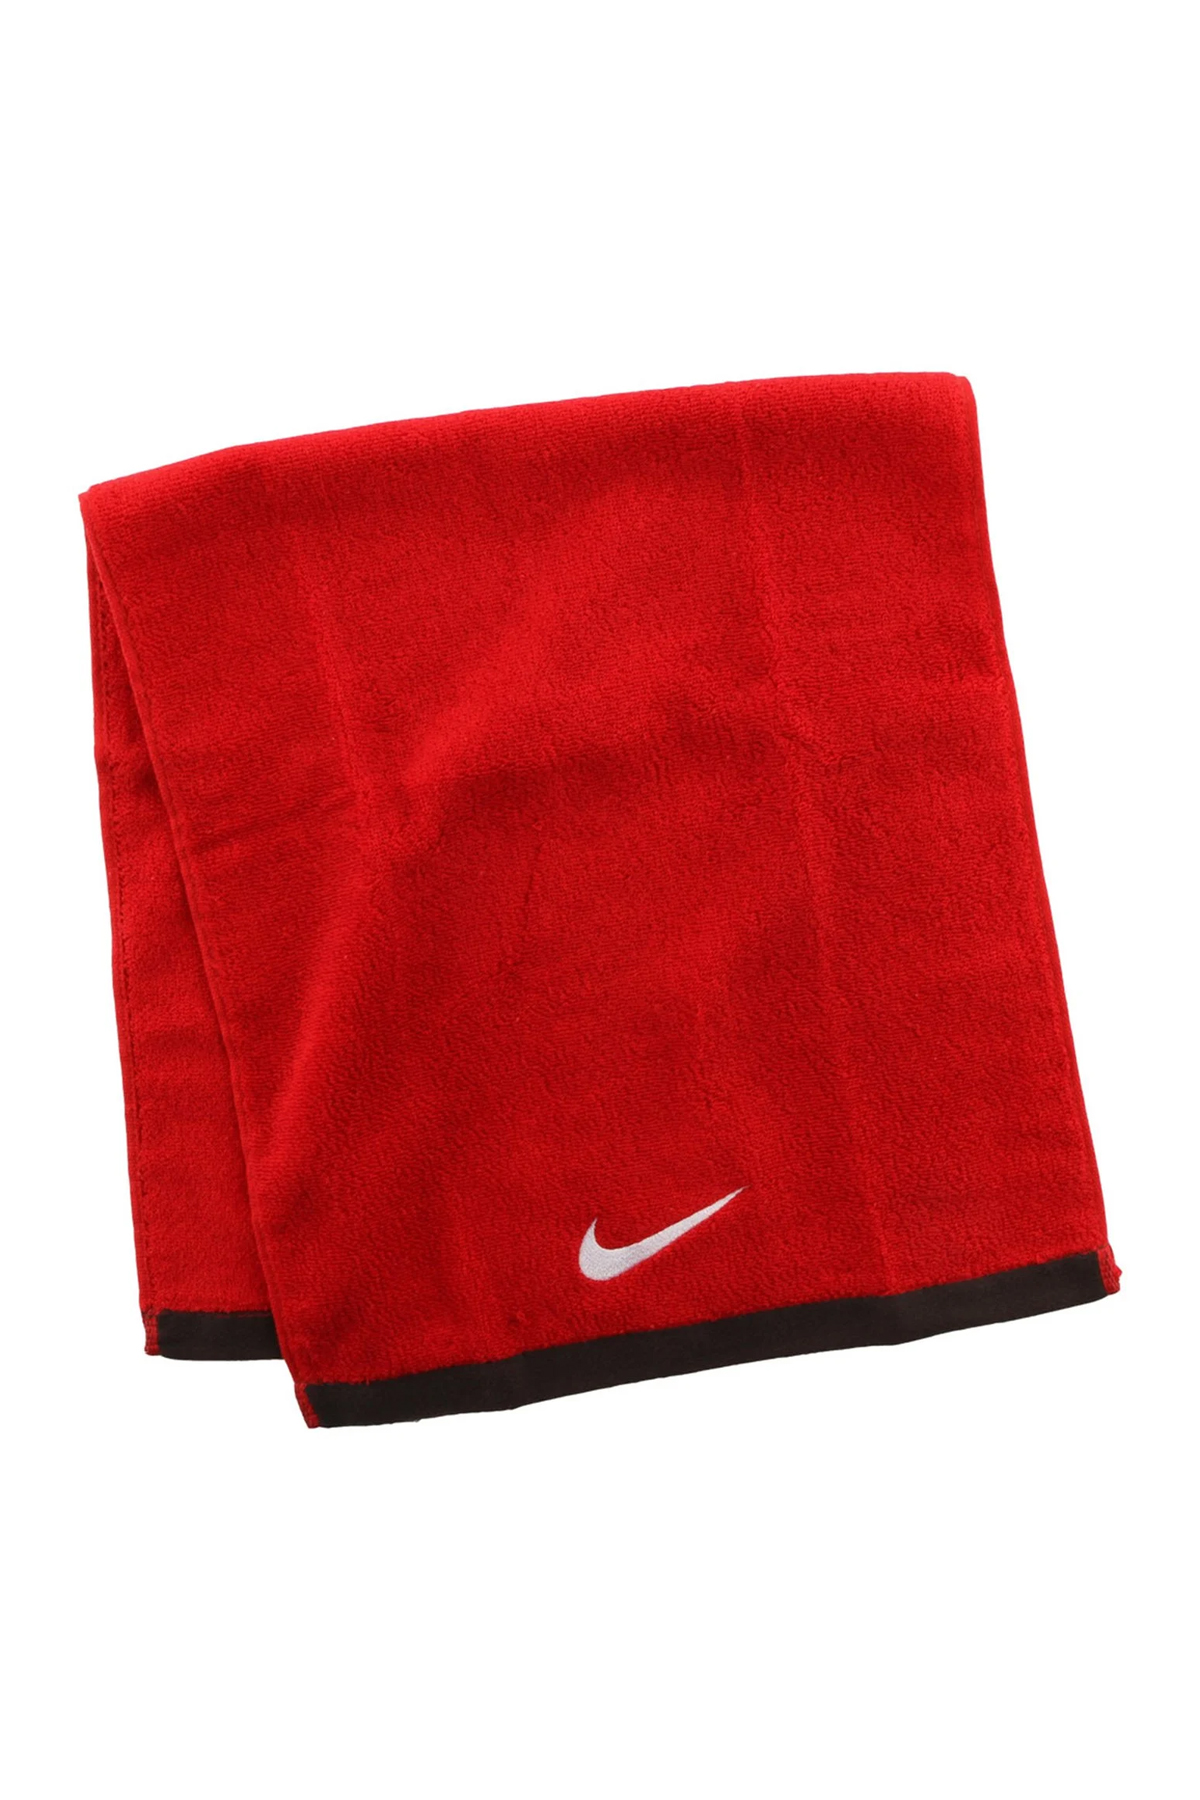 Nike N.ET.17 - Fundamental Kırmızı Spor Havlu